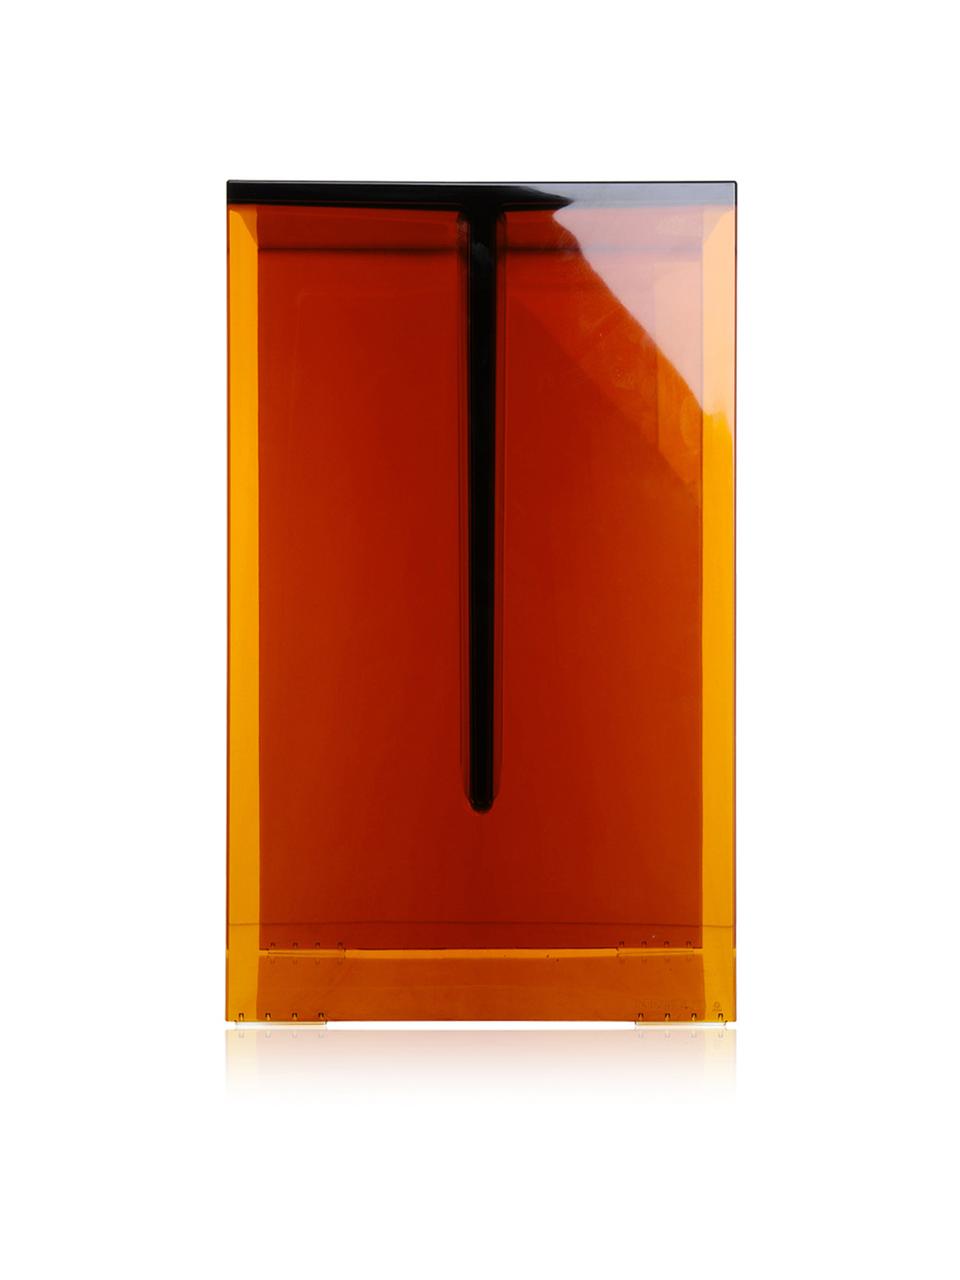 Hocker/Beistelltisch Max-Beam in Orange, Durchfärbtes, transparentes Polypropylen, Greenguard-zertifiziert, Orange, B 33 x H 47 cm